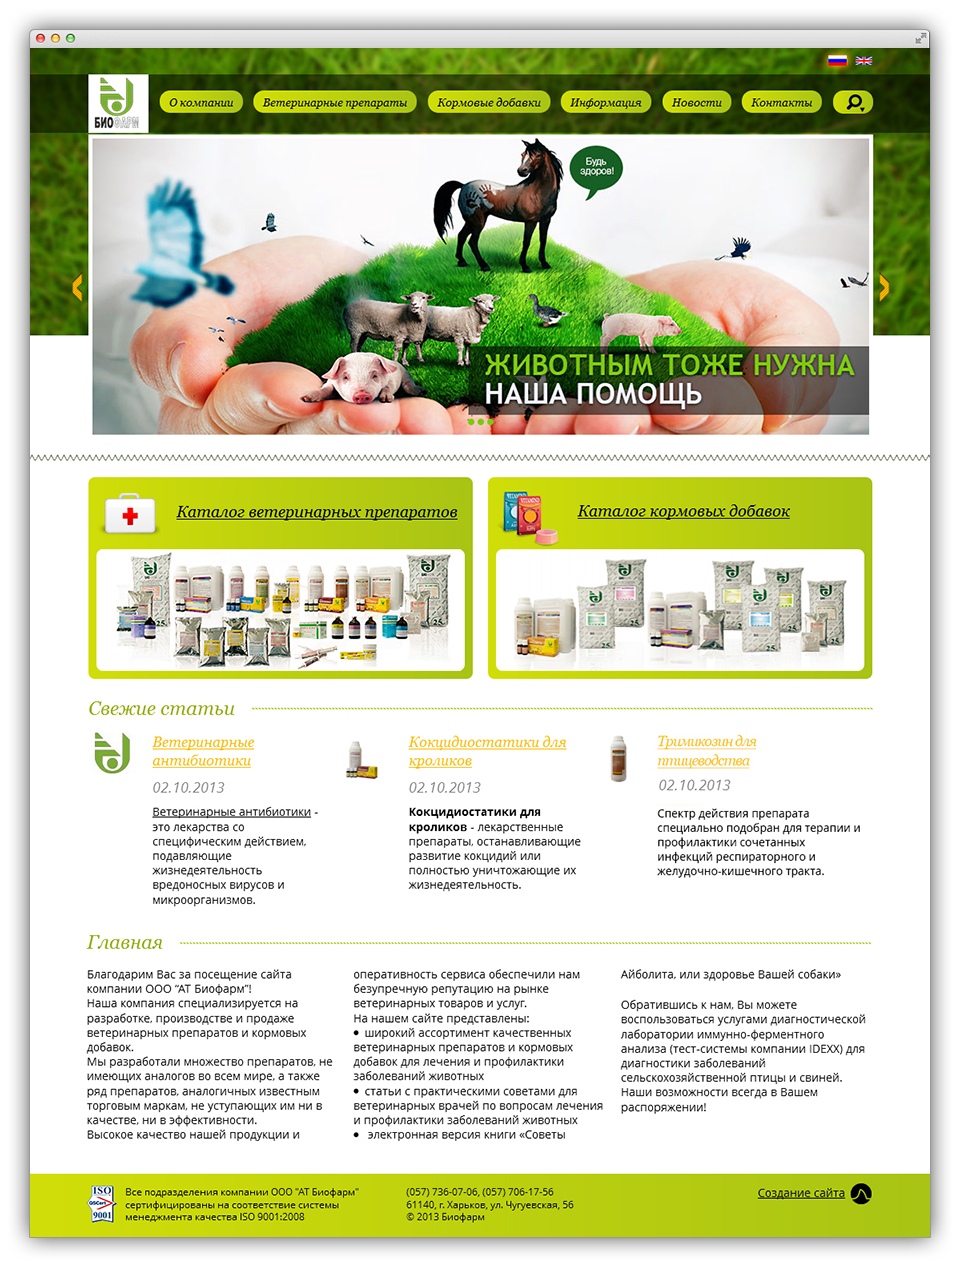 Главная страница сайта производителя фармпрепаратов для животных